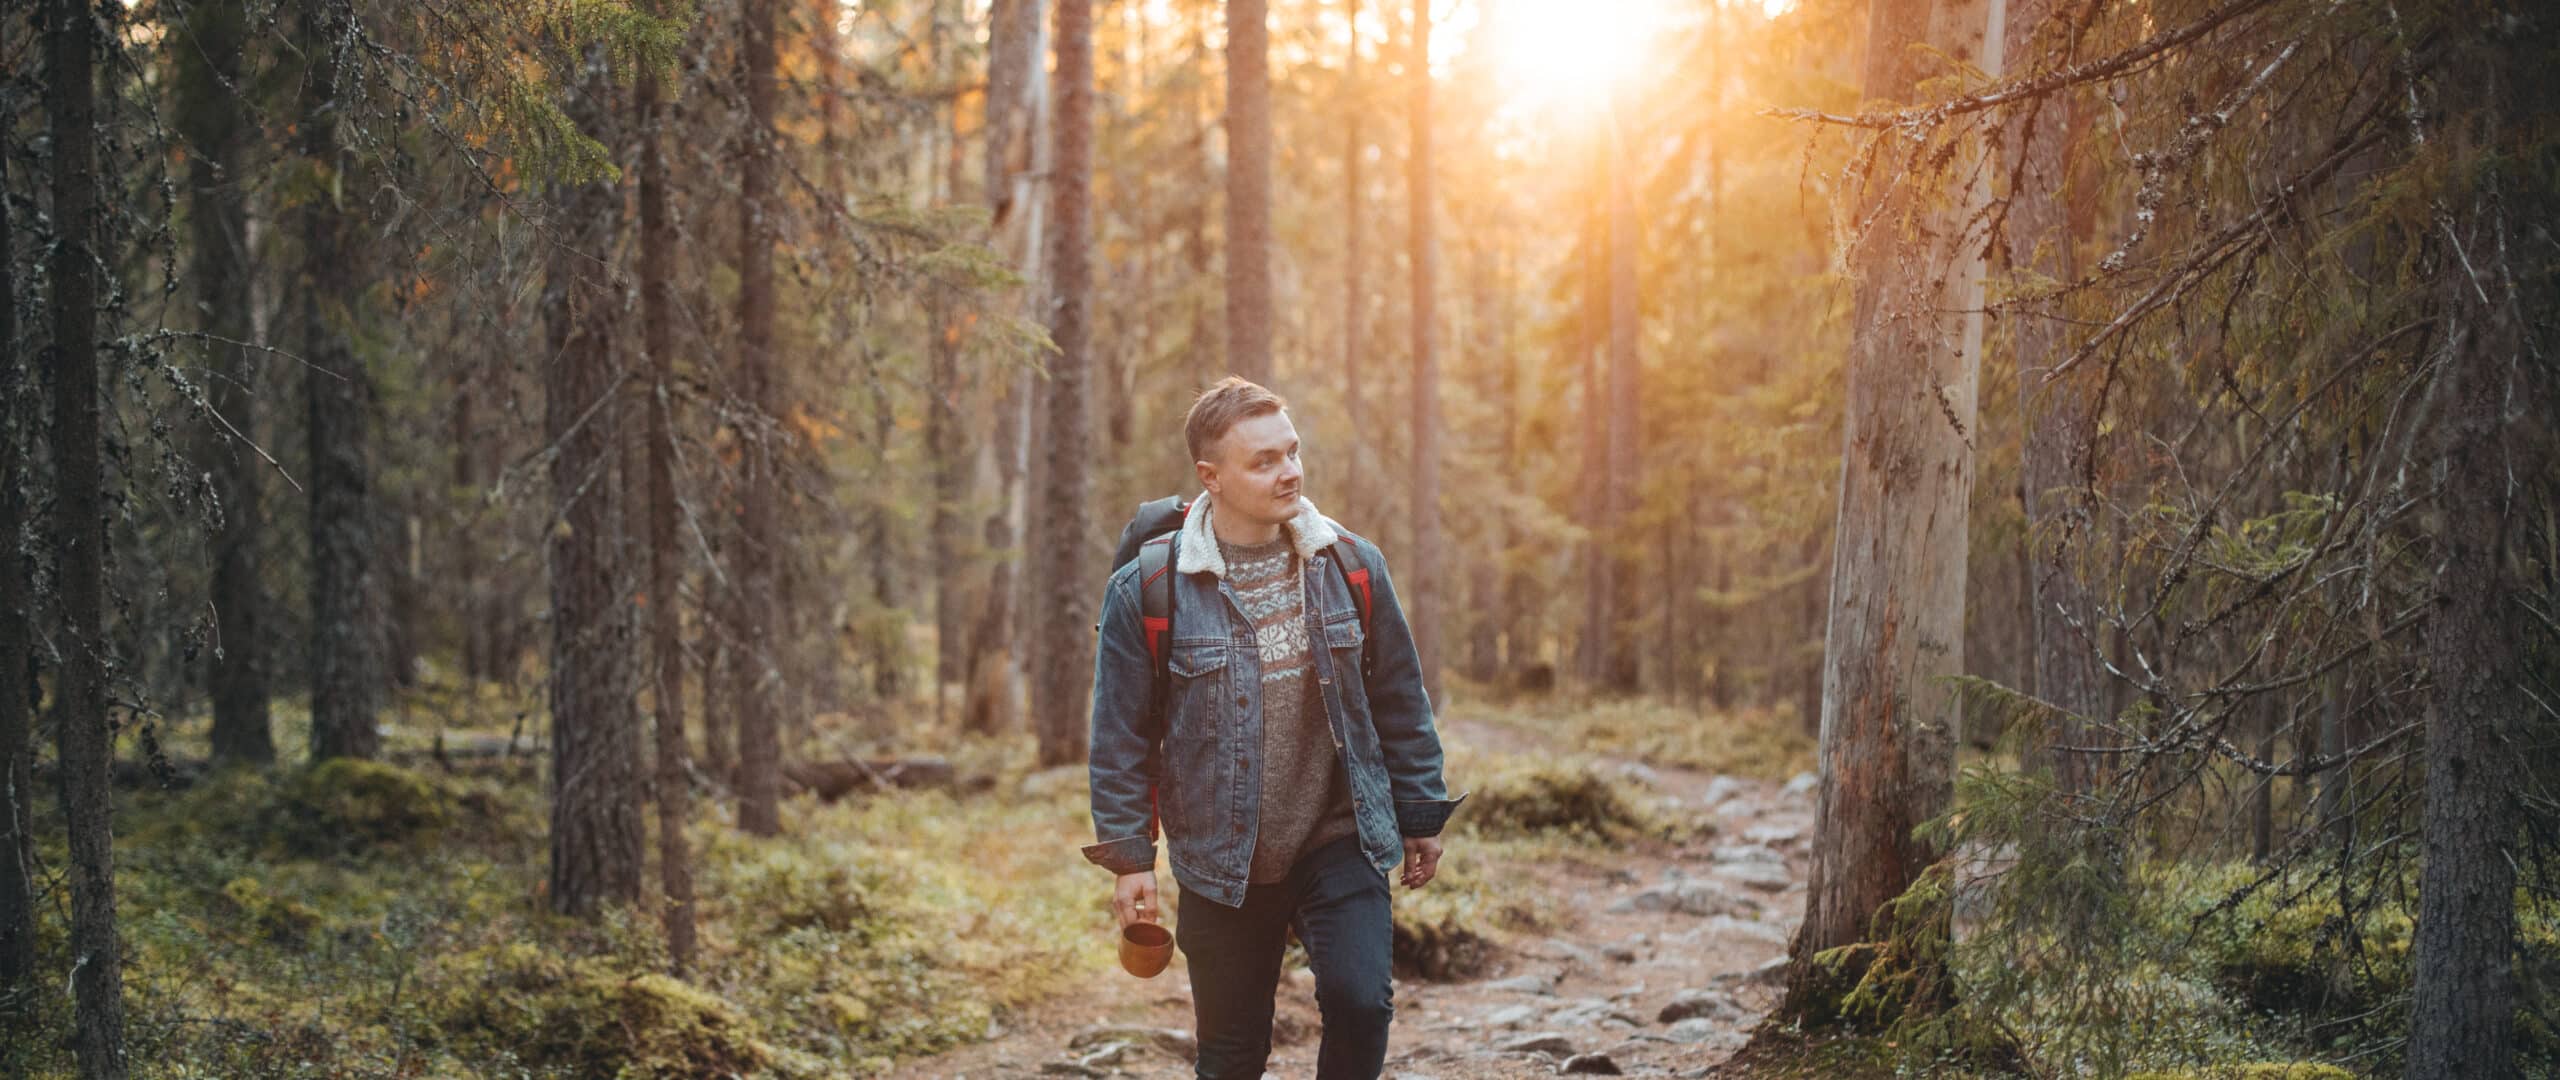 Man walking in forest in Finnish National Park called Pyhä-Häkki